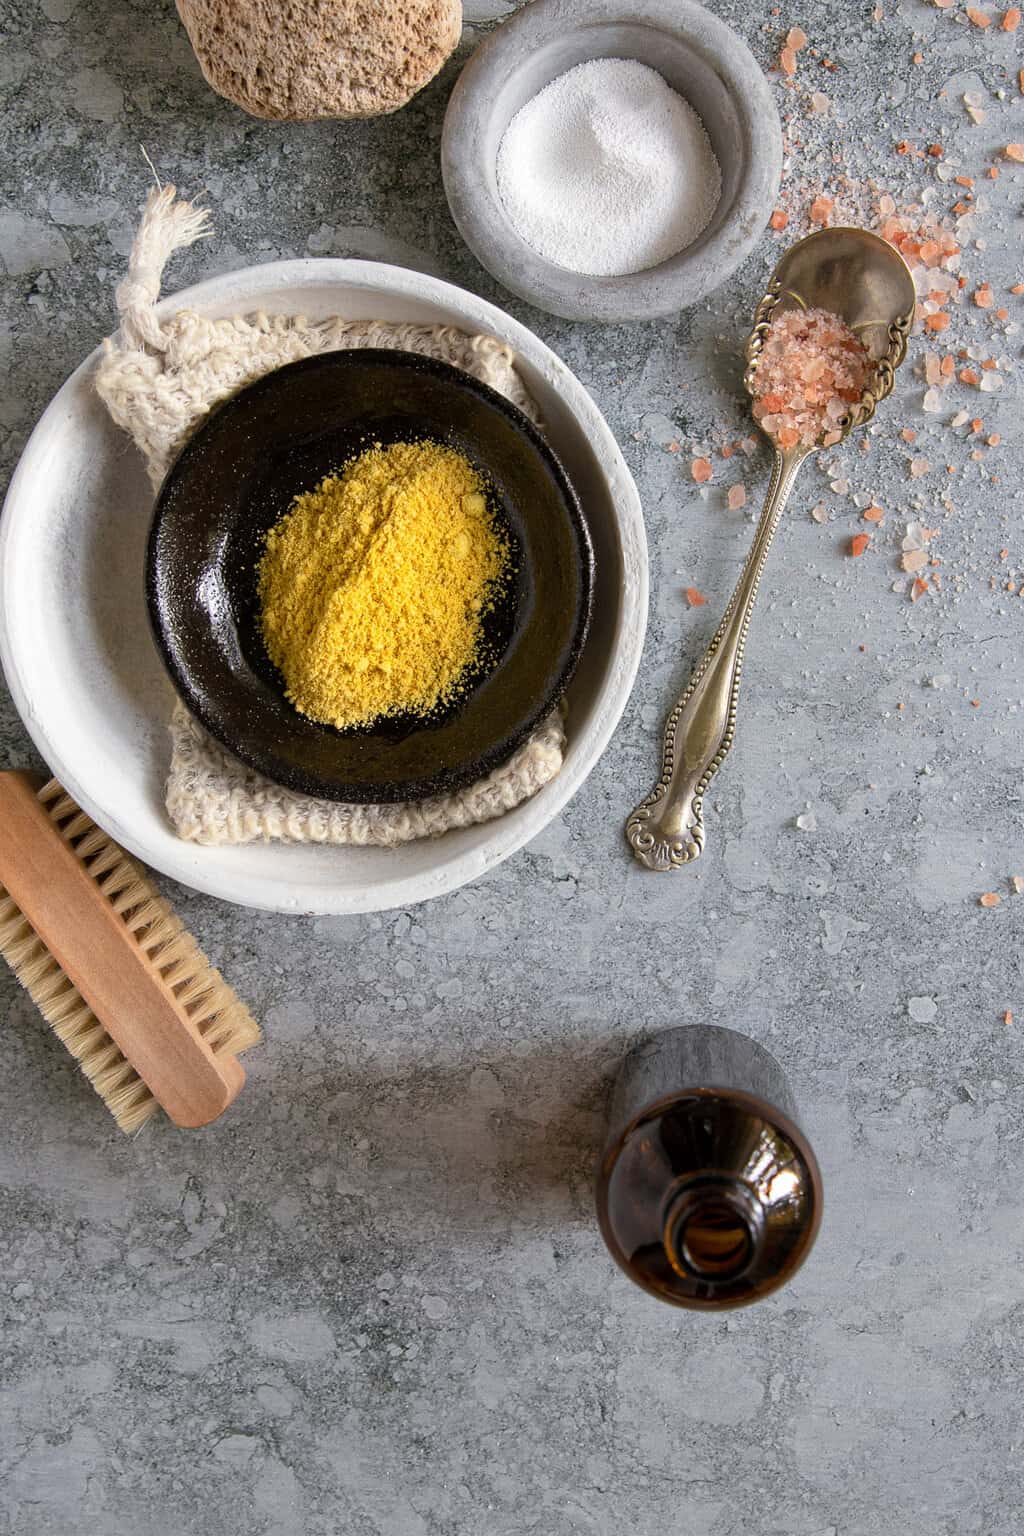 Ingrédients pour faire votre propre recette de bain à la moutarde